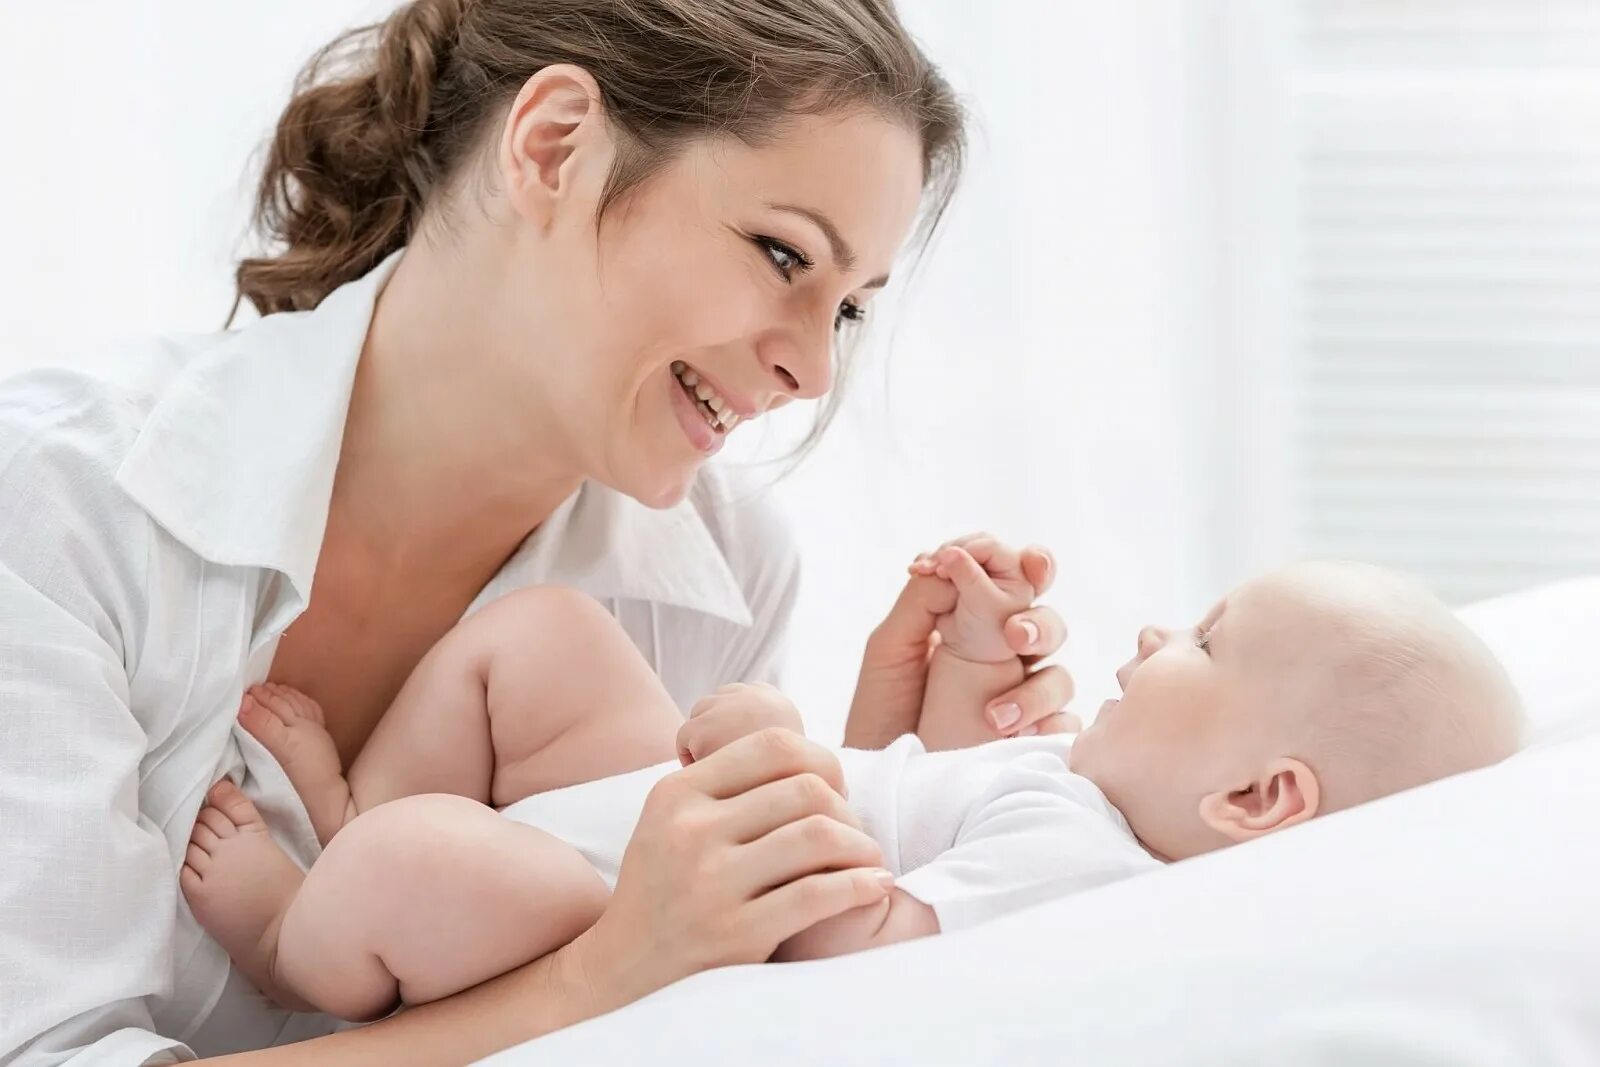 Гигиена послеродового периода. Счастливая мама с младенцем. Игры с новорожденными. Послеродовой период фото. Ранний послеродовый период картинки.